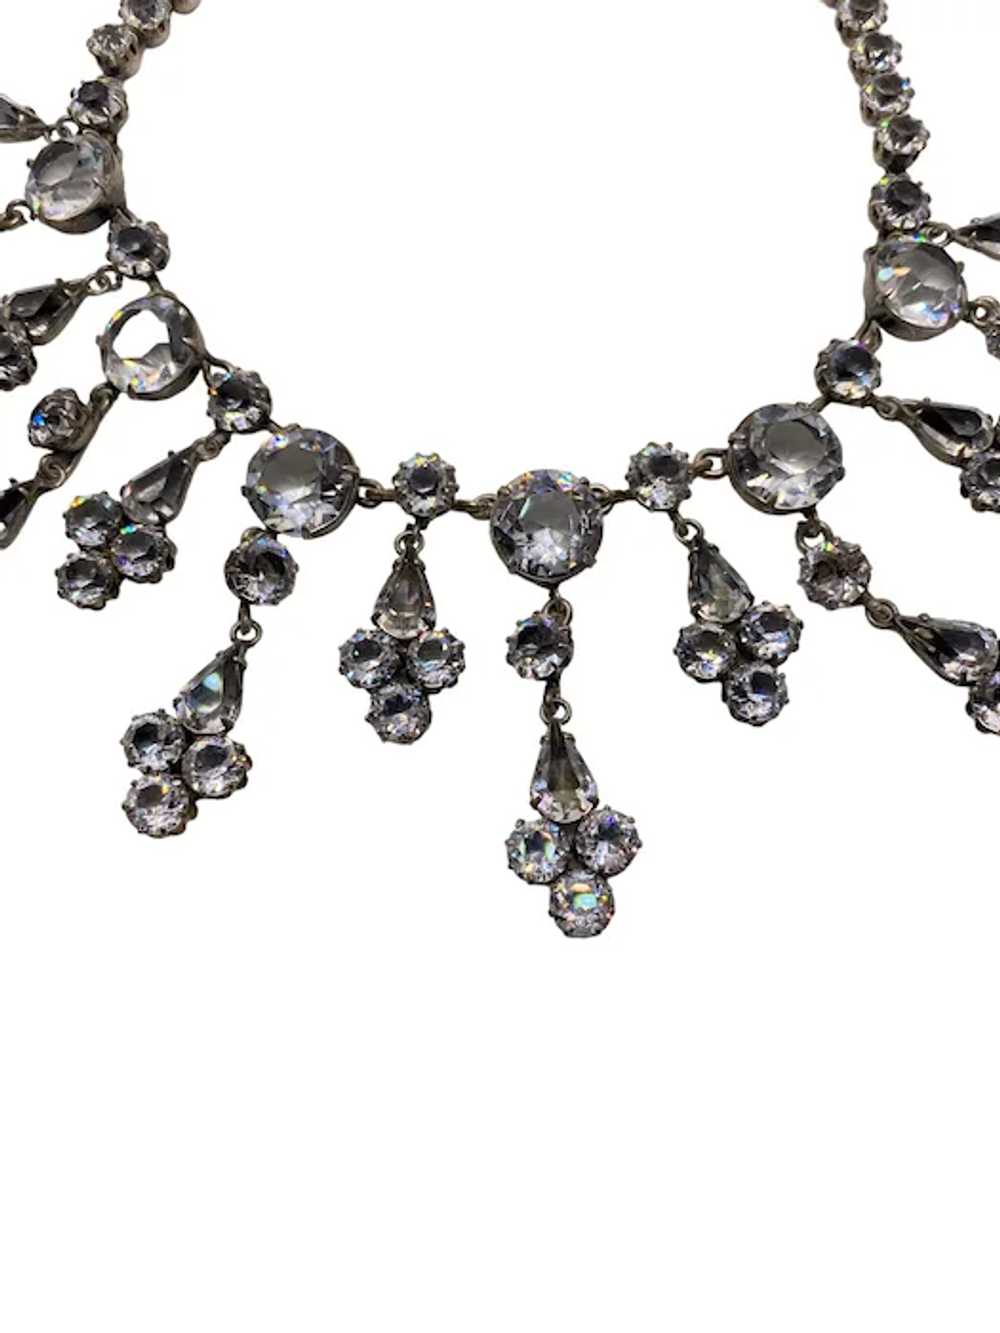 Huge Schreiner Clear Glass Dangle Bib Necklace - image 5